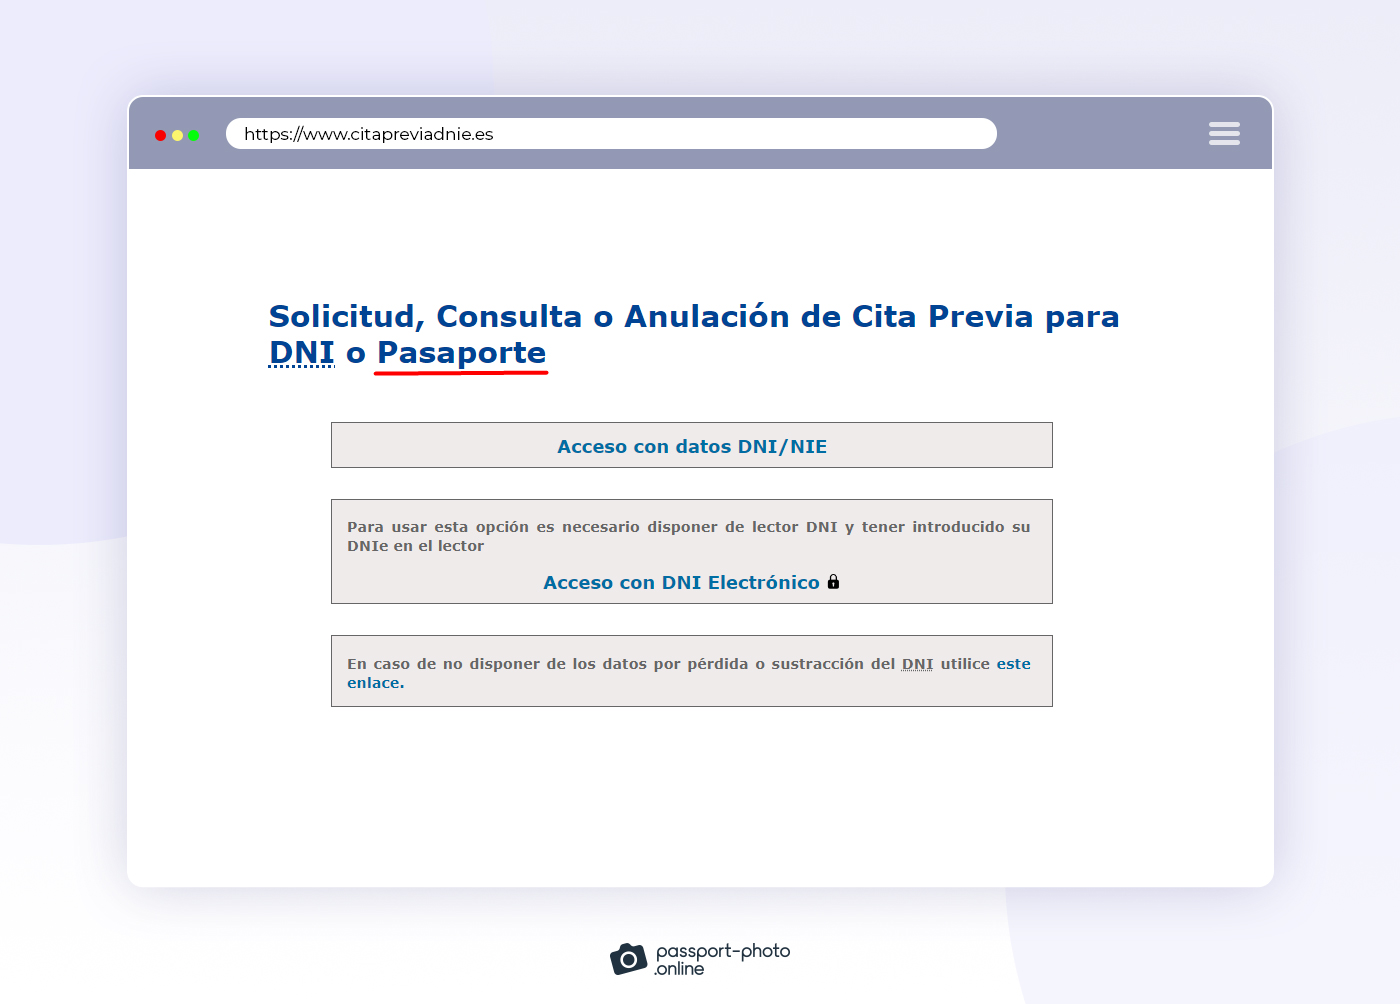 Primer paso para solicitar una cita previa para pasaporte es acceder a la página web oficial con tus datos DNIE/NIE